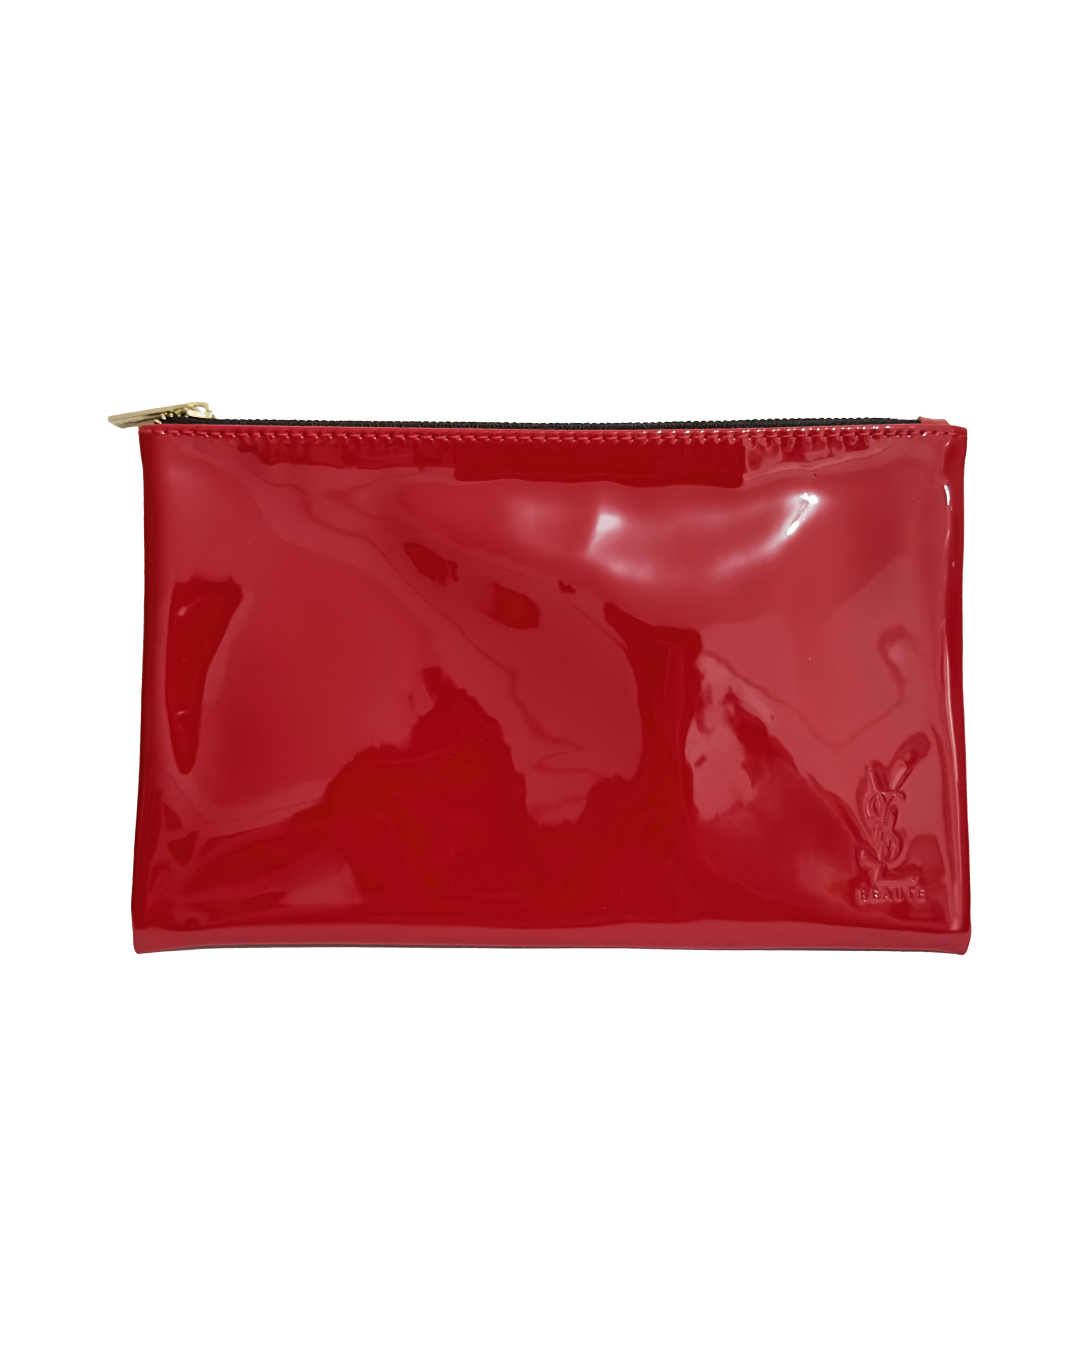 Saint Laurent | Bags | Pink Saint Laurent Ysl Coin Pouch Used Stt4382 |  Poshmark